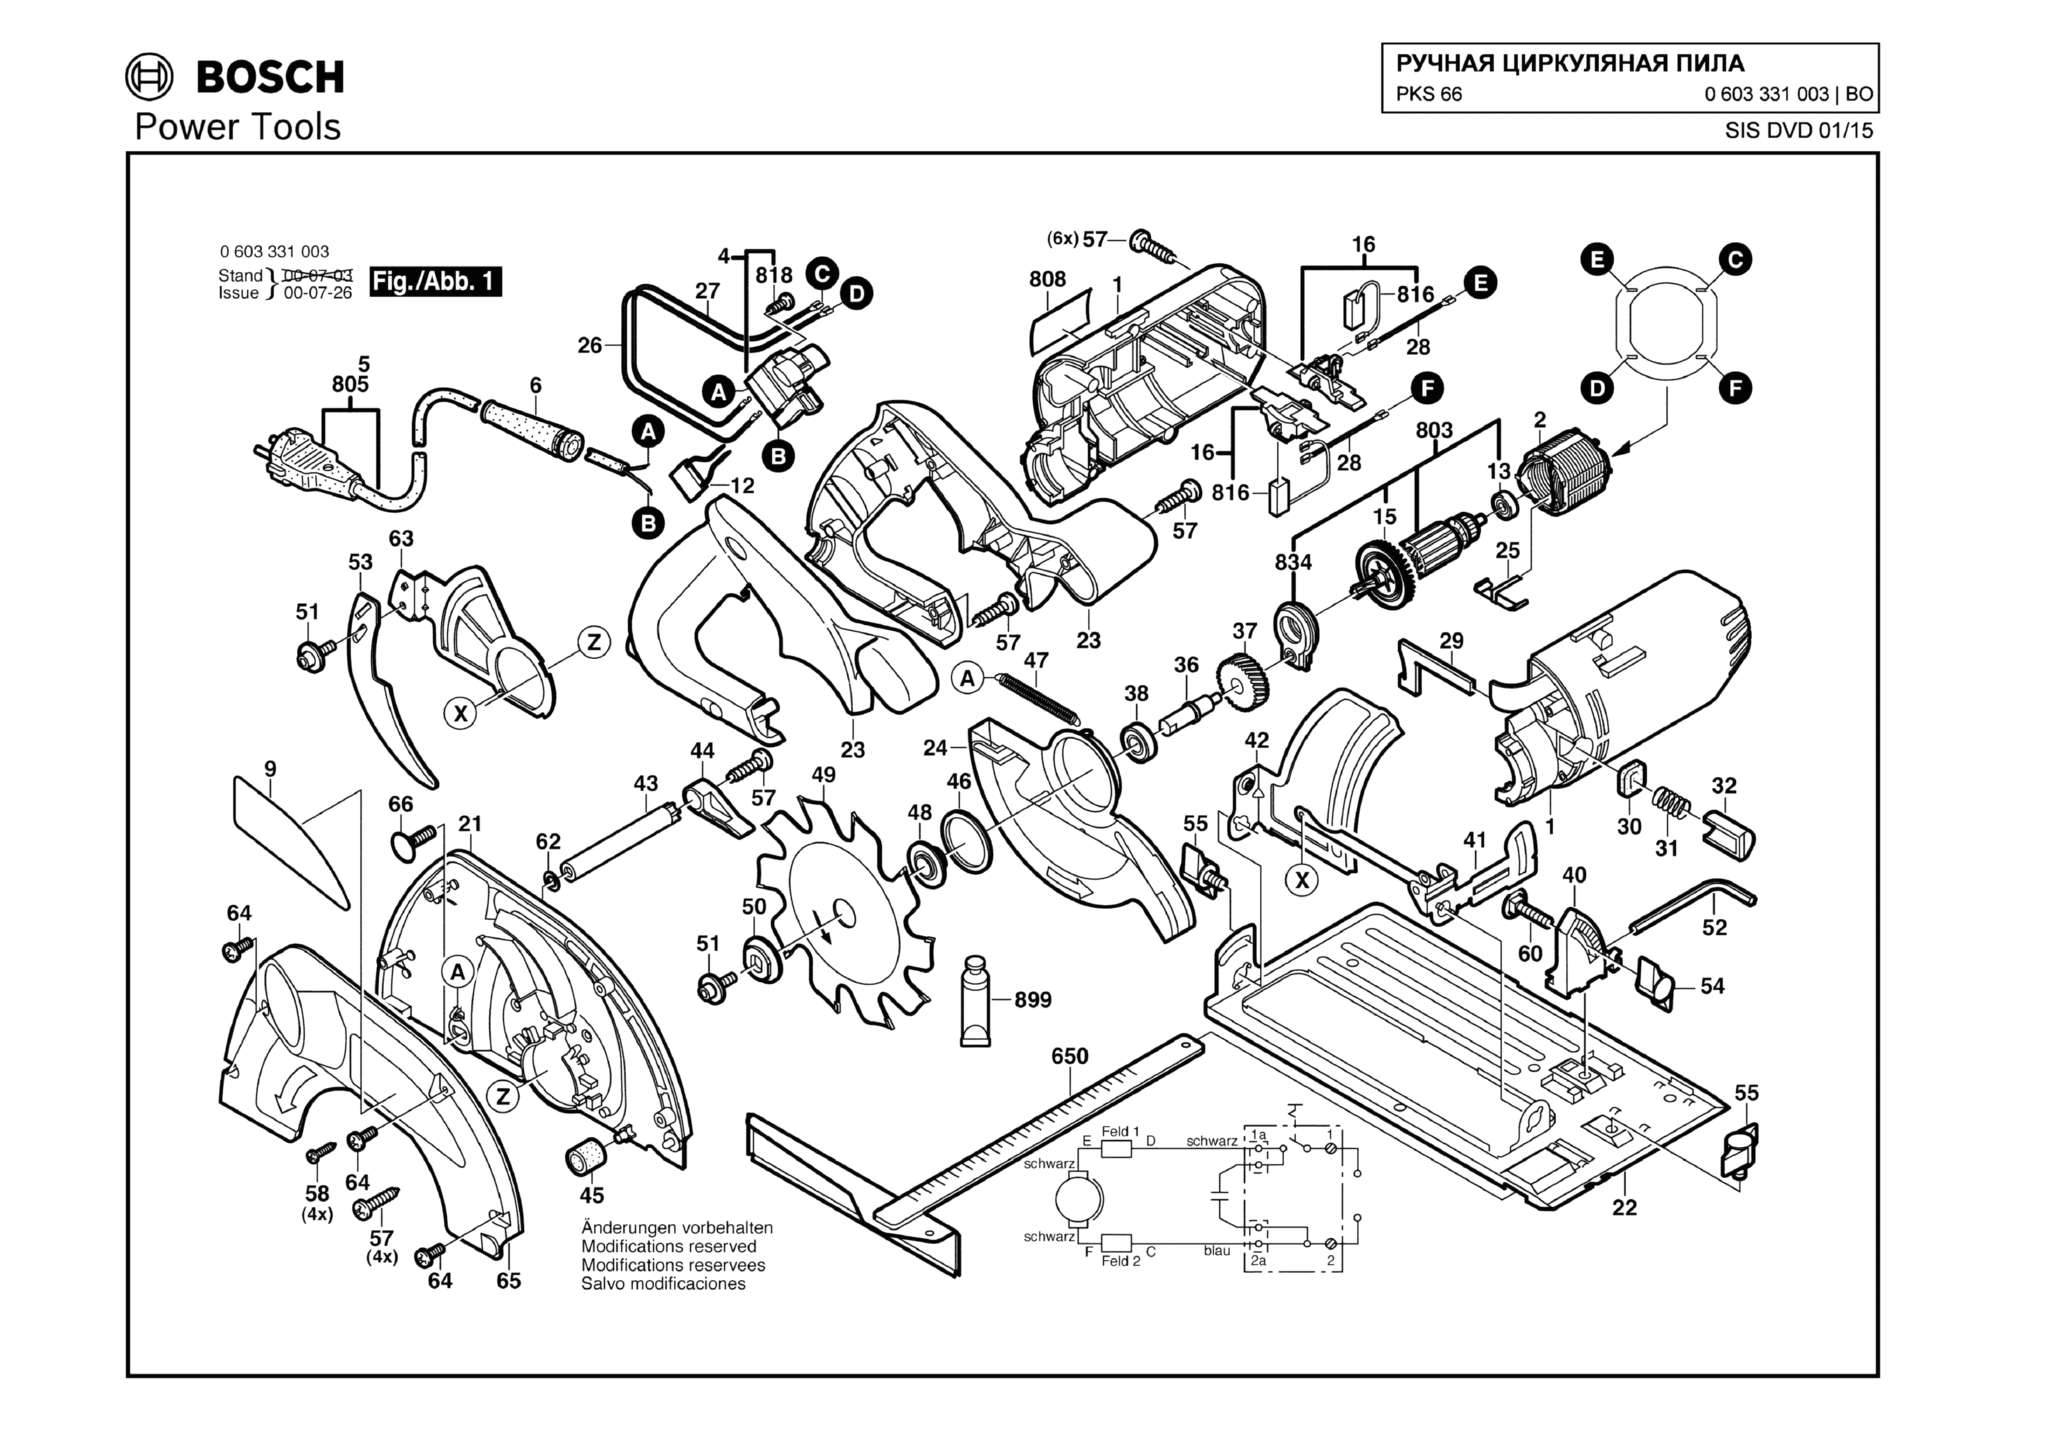 Запчасти, схема и деталировка Bosch PKS 66 (ТИП 0603331003)